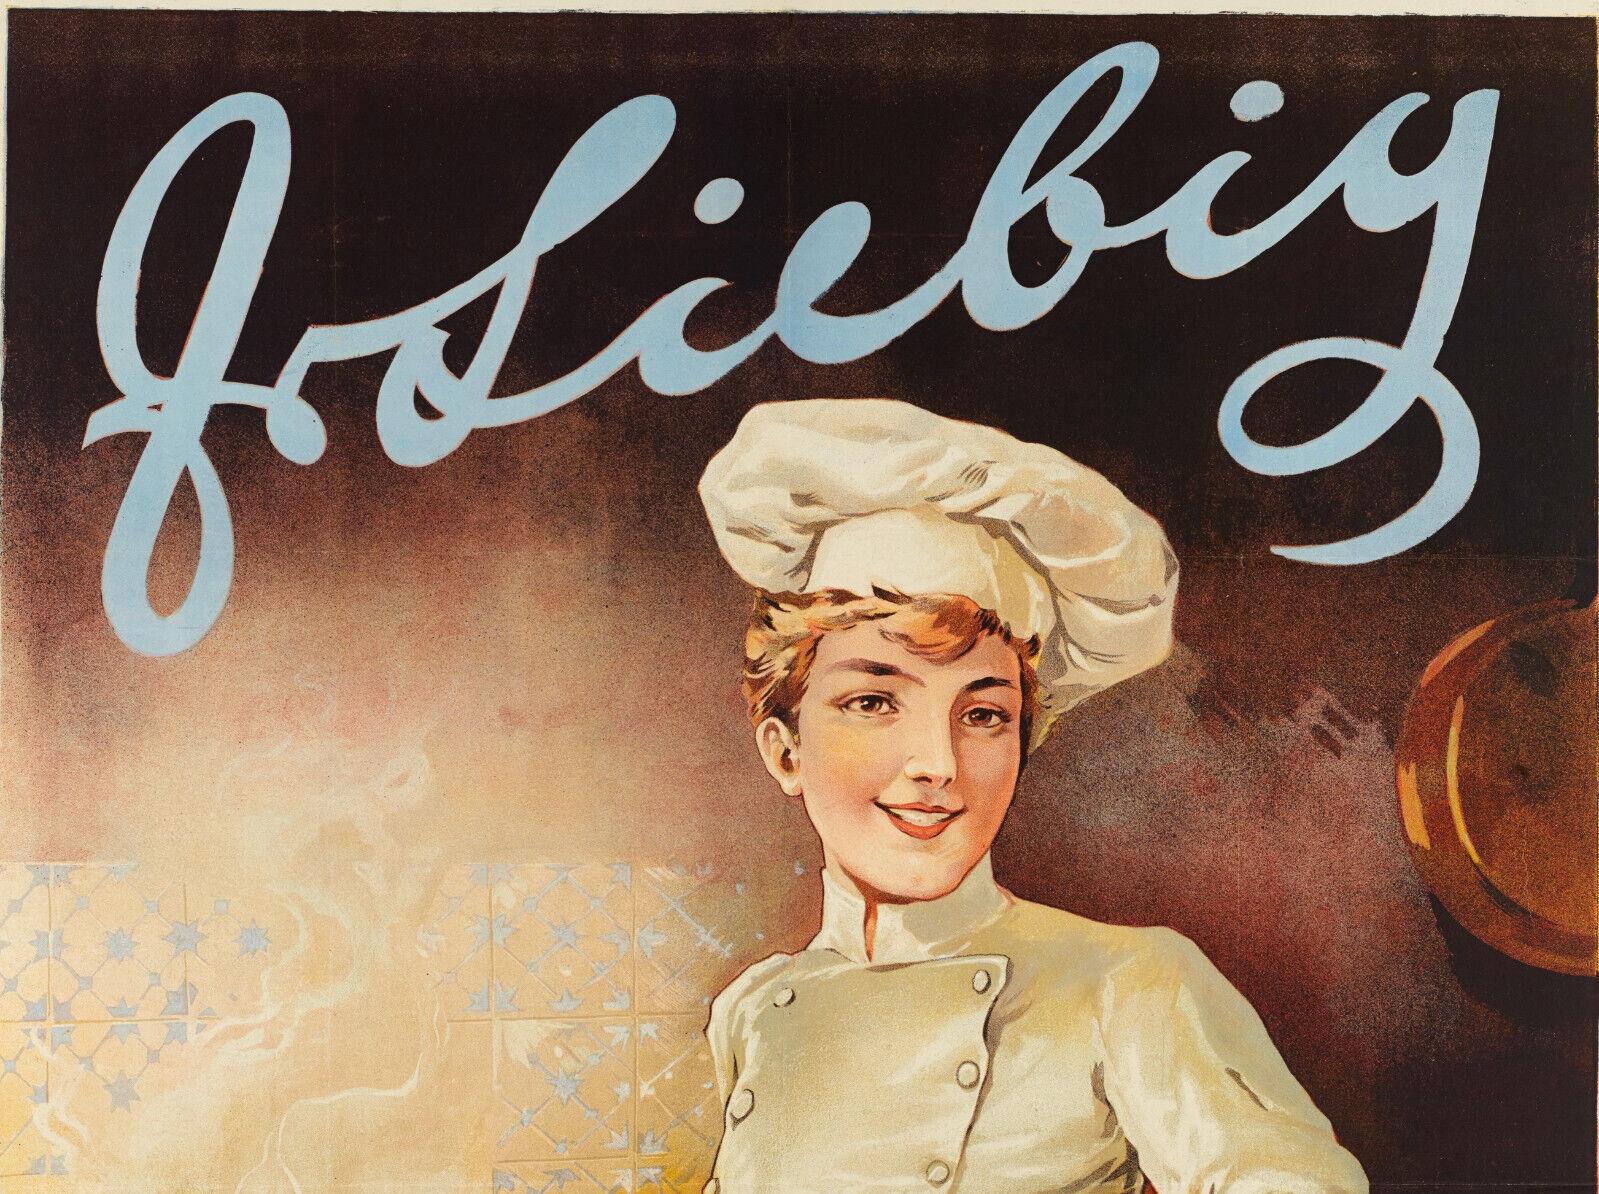 Affiche originale de la Belle Époque -Tamagno-Liebig-Viande - Piano-Cook, 1898

On y voit un cuisinier devant son piano, de l'eau à bouillir dans une casserole et un pot d'extrait de viande Liebeig ouvert sur une table.

Détails supplémentaires